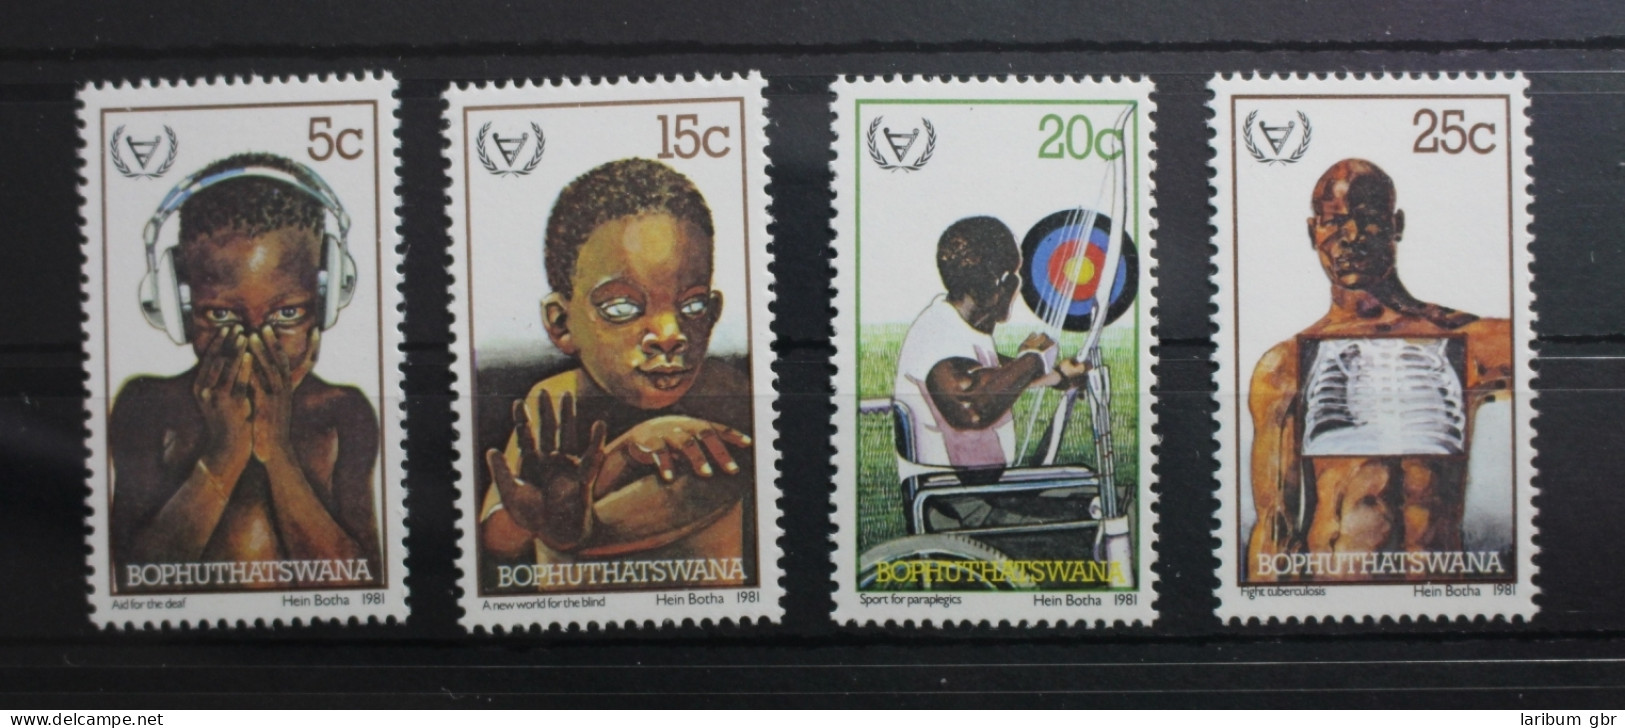 Südafrika Bophuthatswana 68-71 Postfrisch Behinderte #SD270 - Bophuthatswana